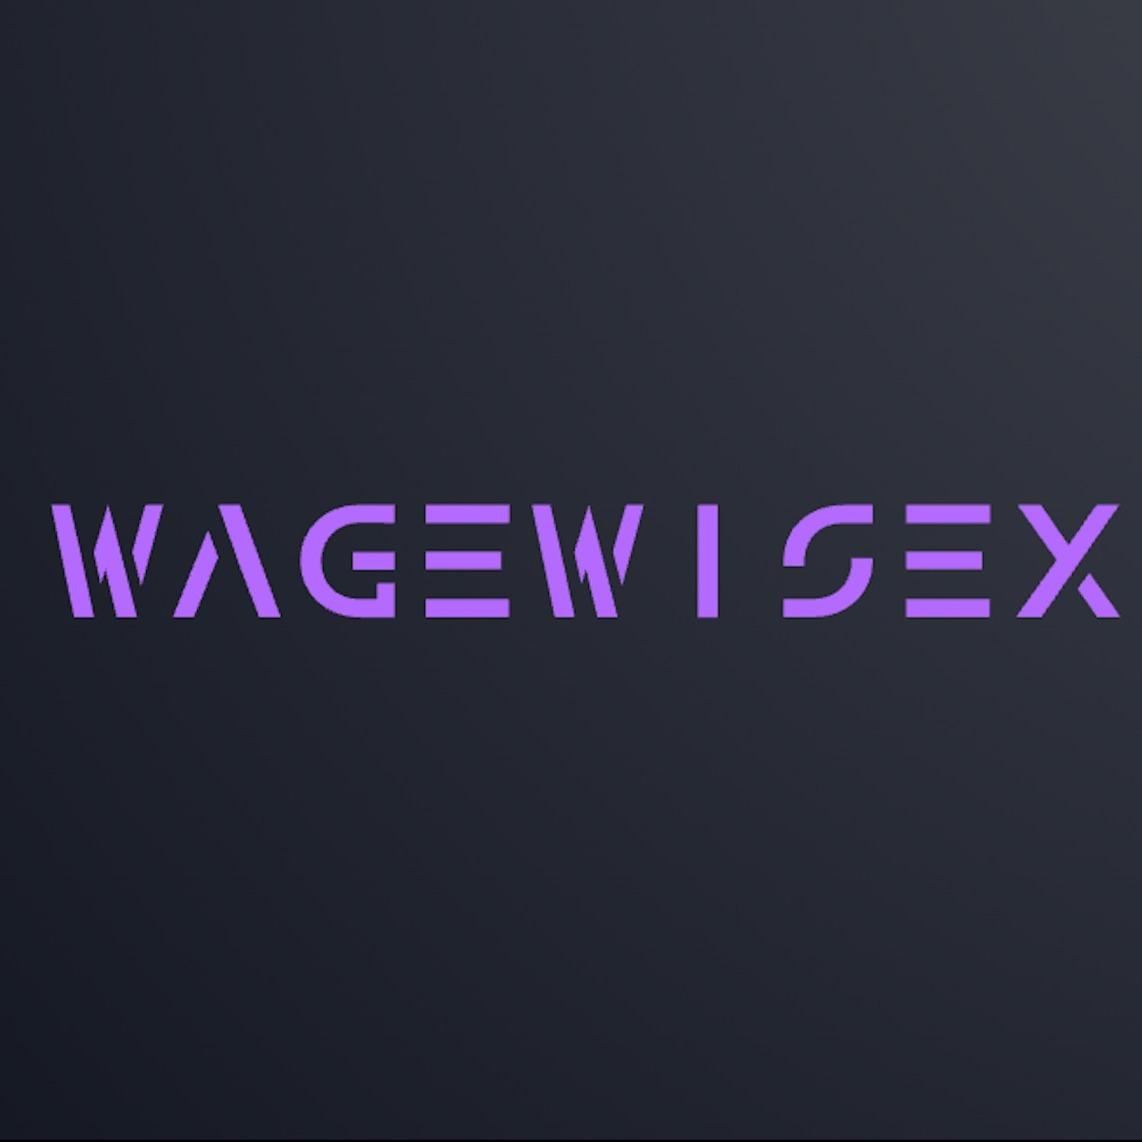 WageWiseX